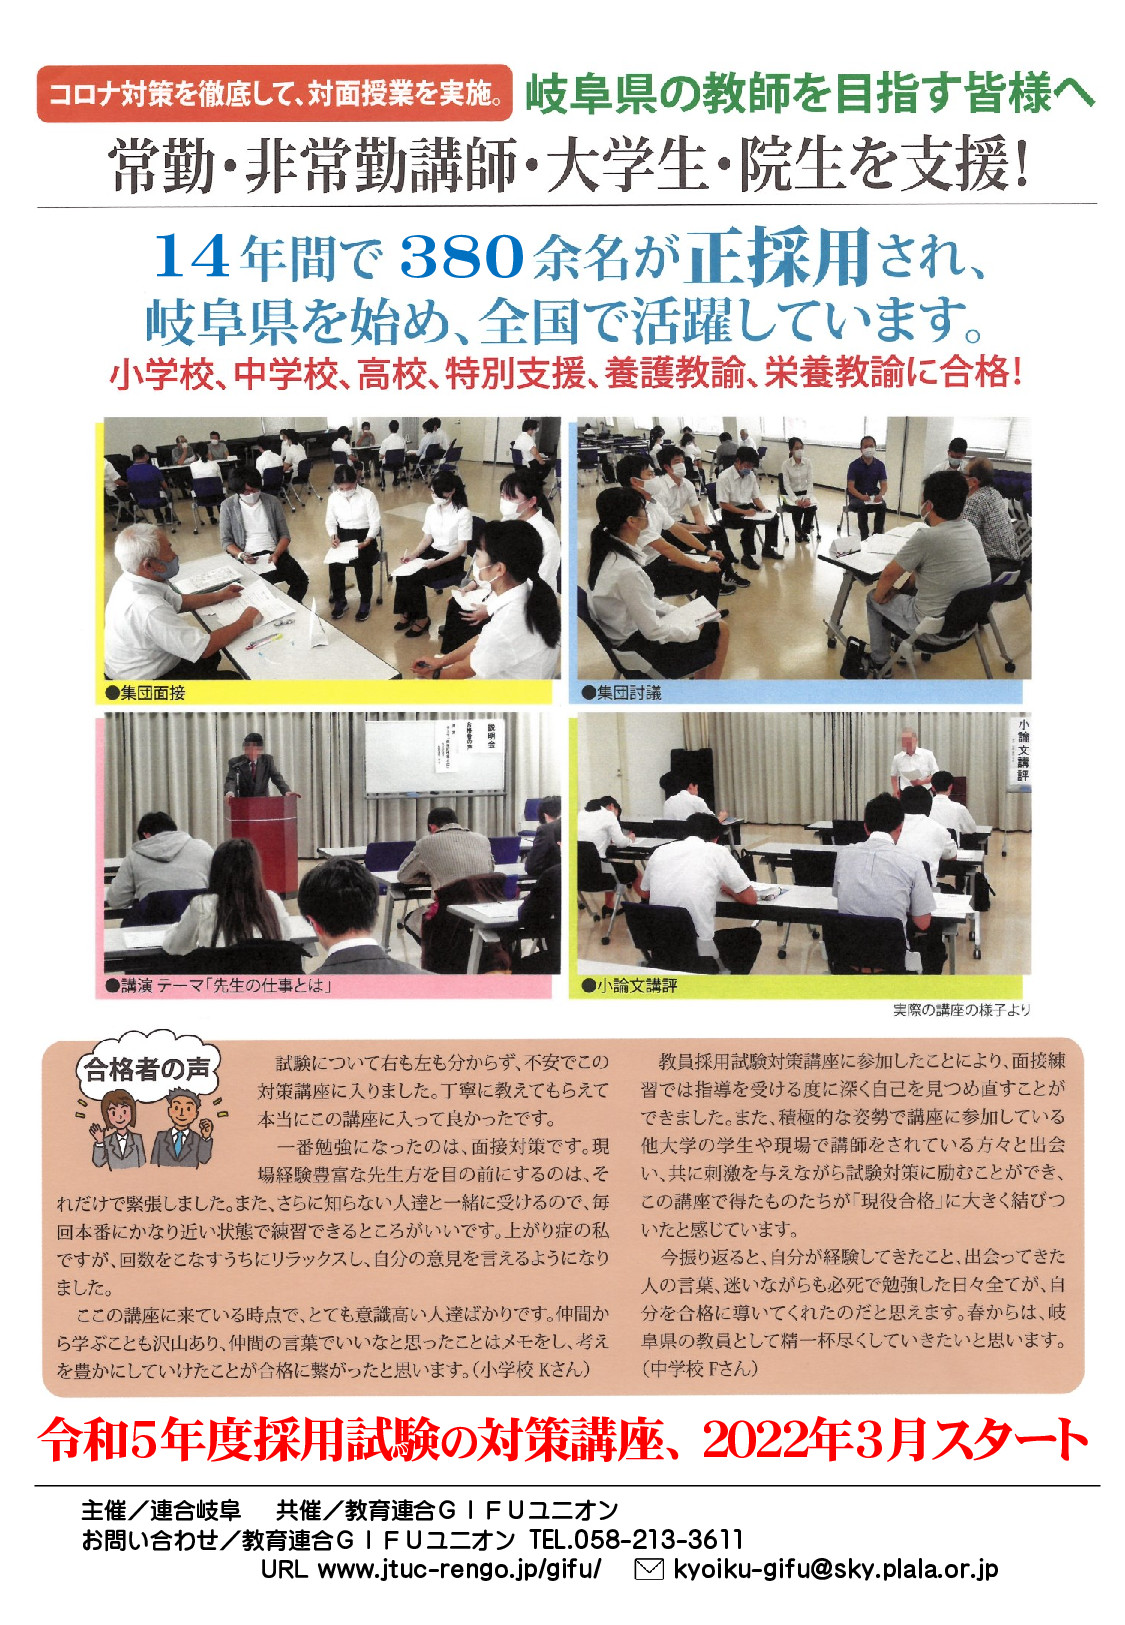 「岐阜県教員採用試験対策講座」を３月から開講します。